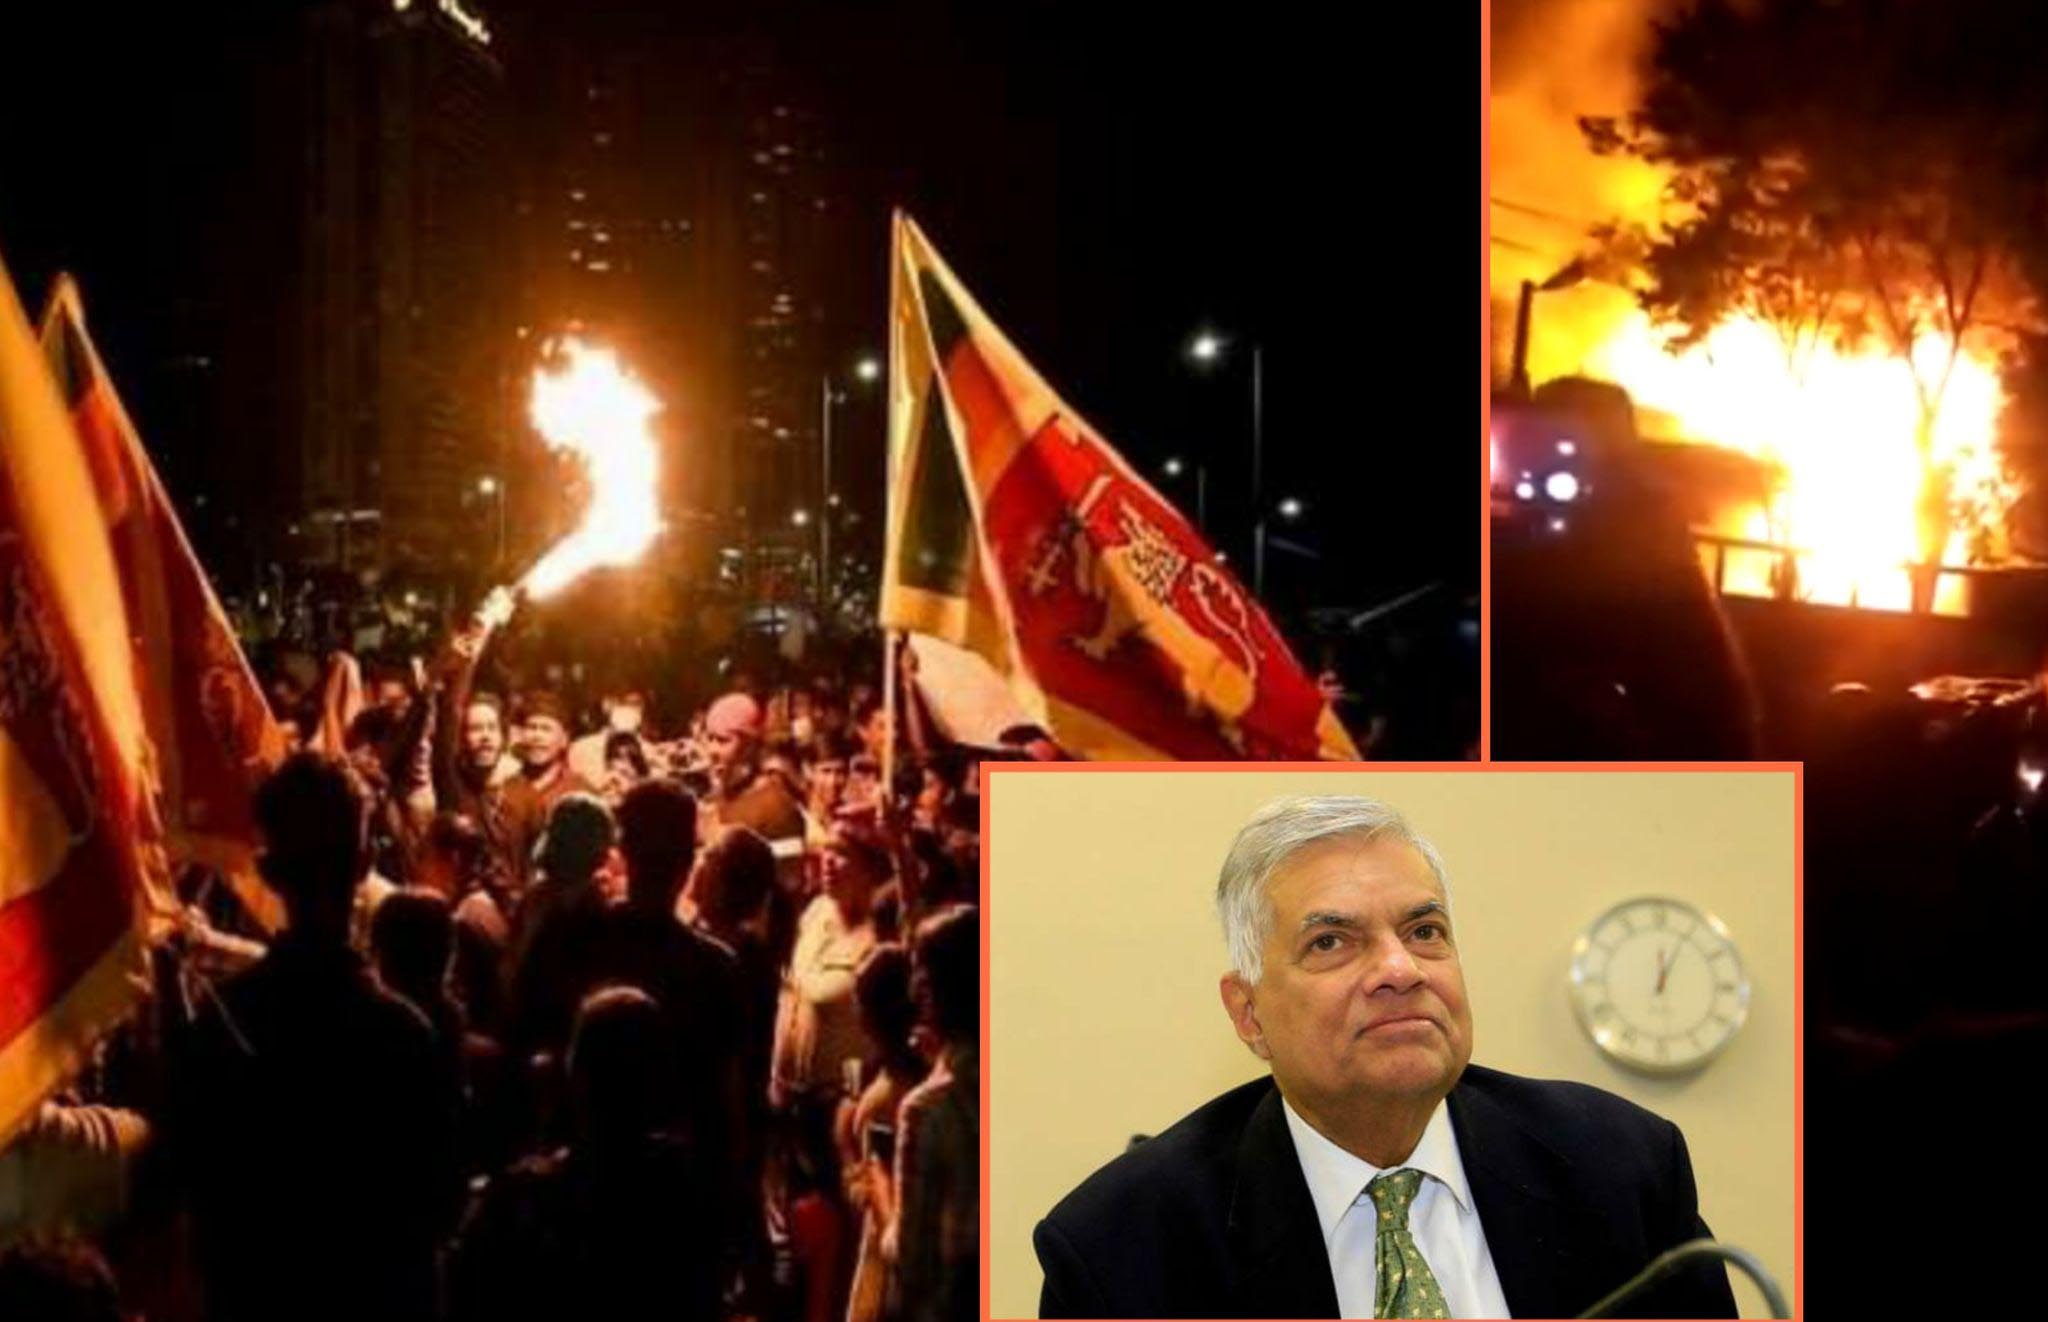 श्रीलंका संकट : प्रधानमन्त्रीको घरमा आगजनी, राष्ट्रपतिले राजीनामा दिने